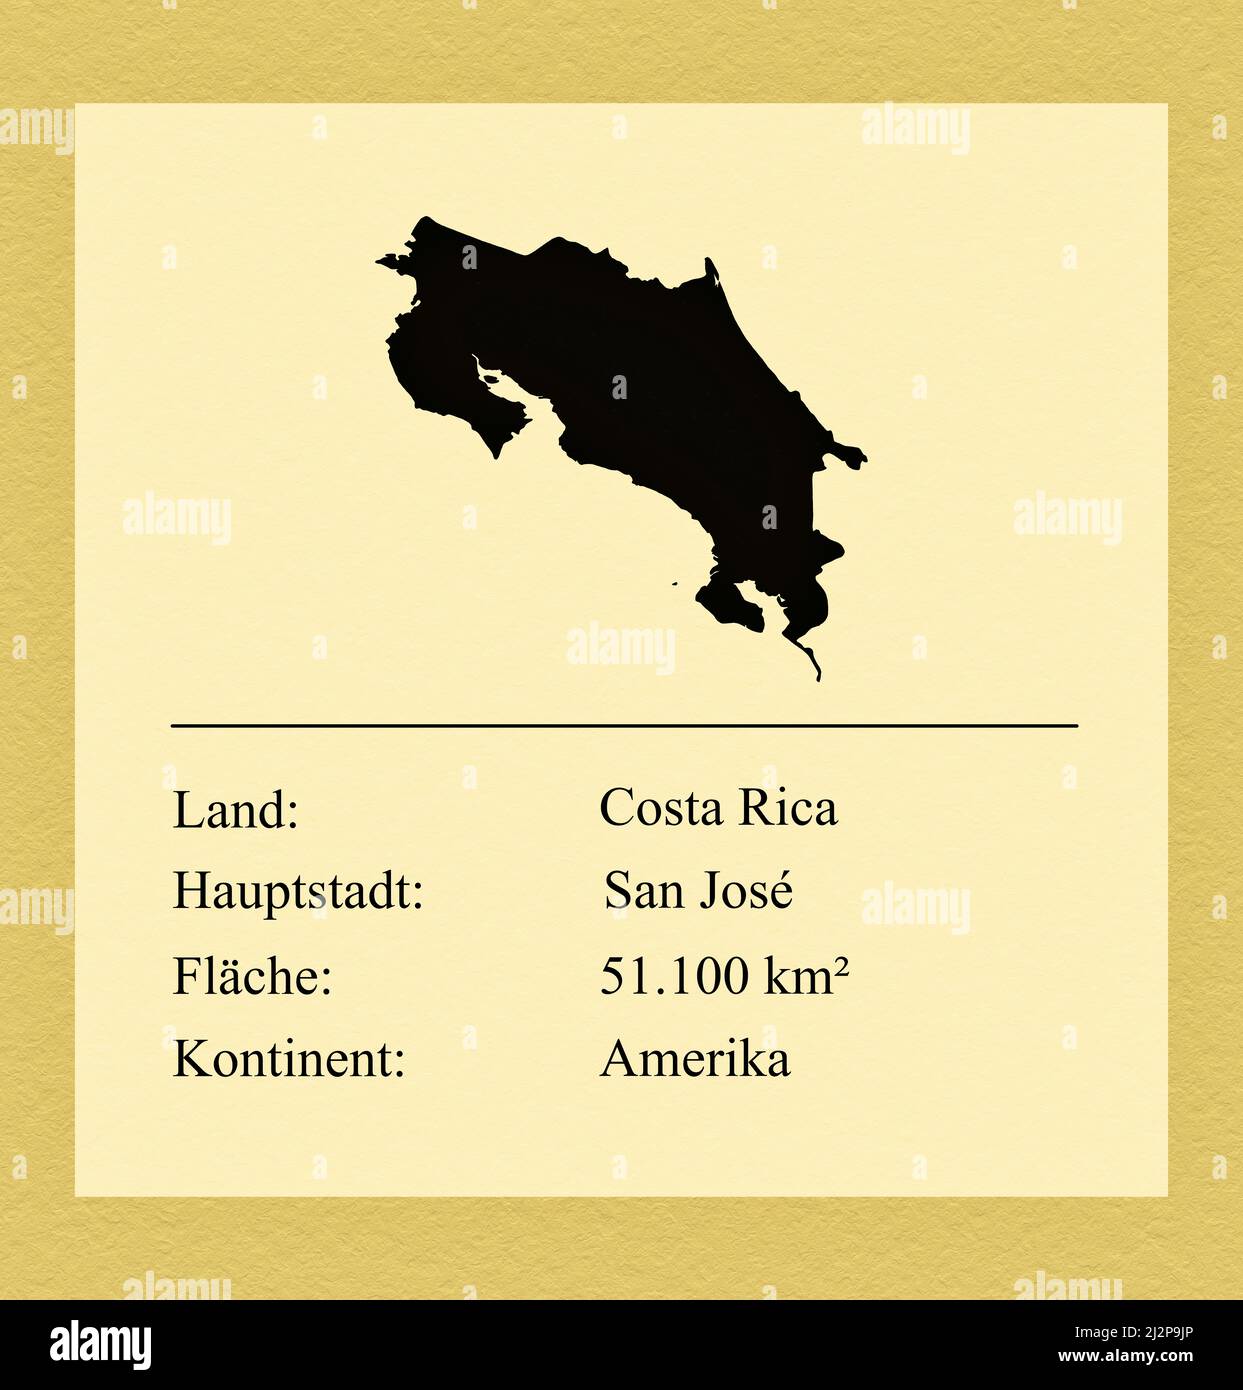 Umrisse des Landes Costa Rica, darunter ein kleiner Steckbrief mit Ländernamen, Hauptstadt, Fläche und Kontinent Foto Stock